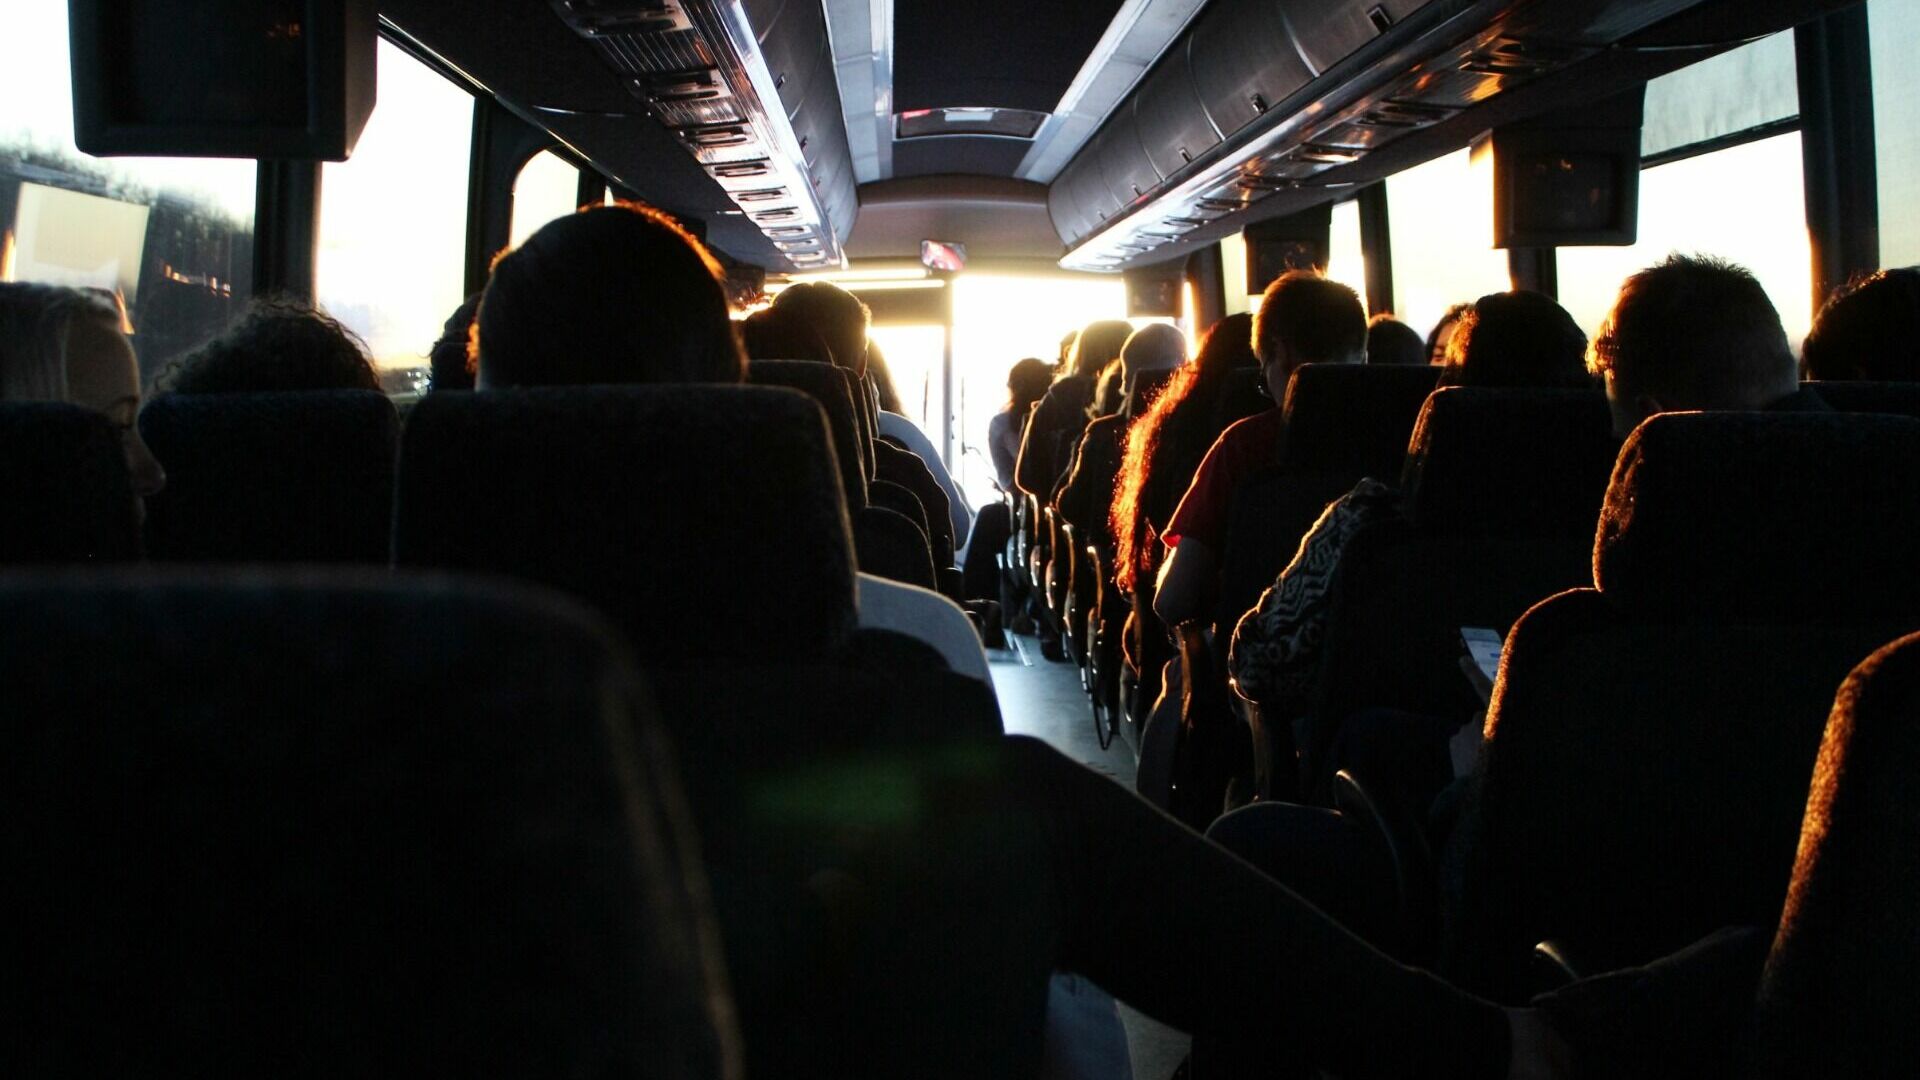 Водителю автобуса грозит наказание за вождение транспорта без рук